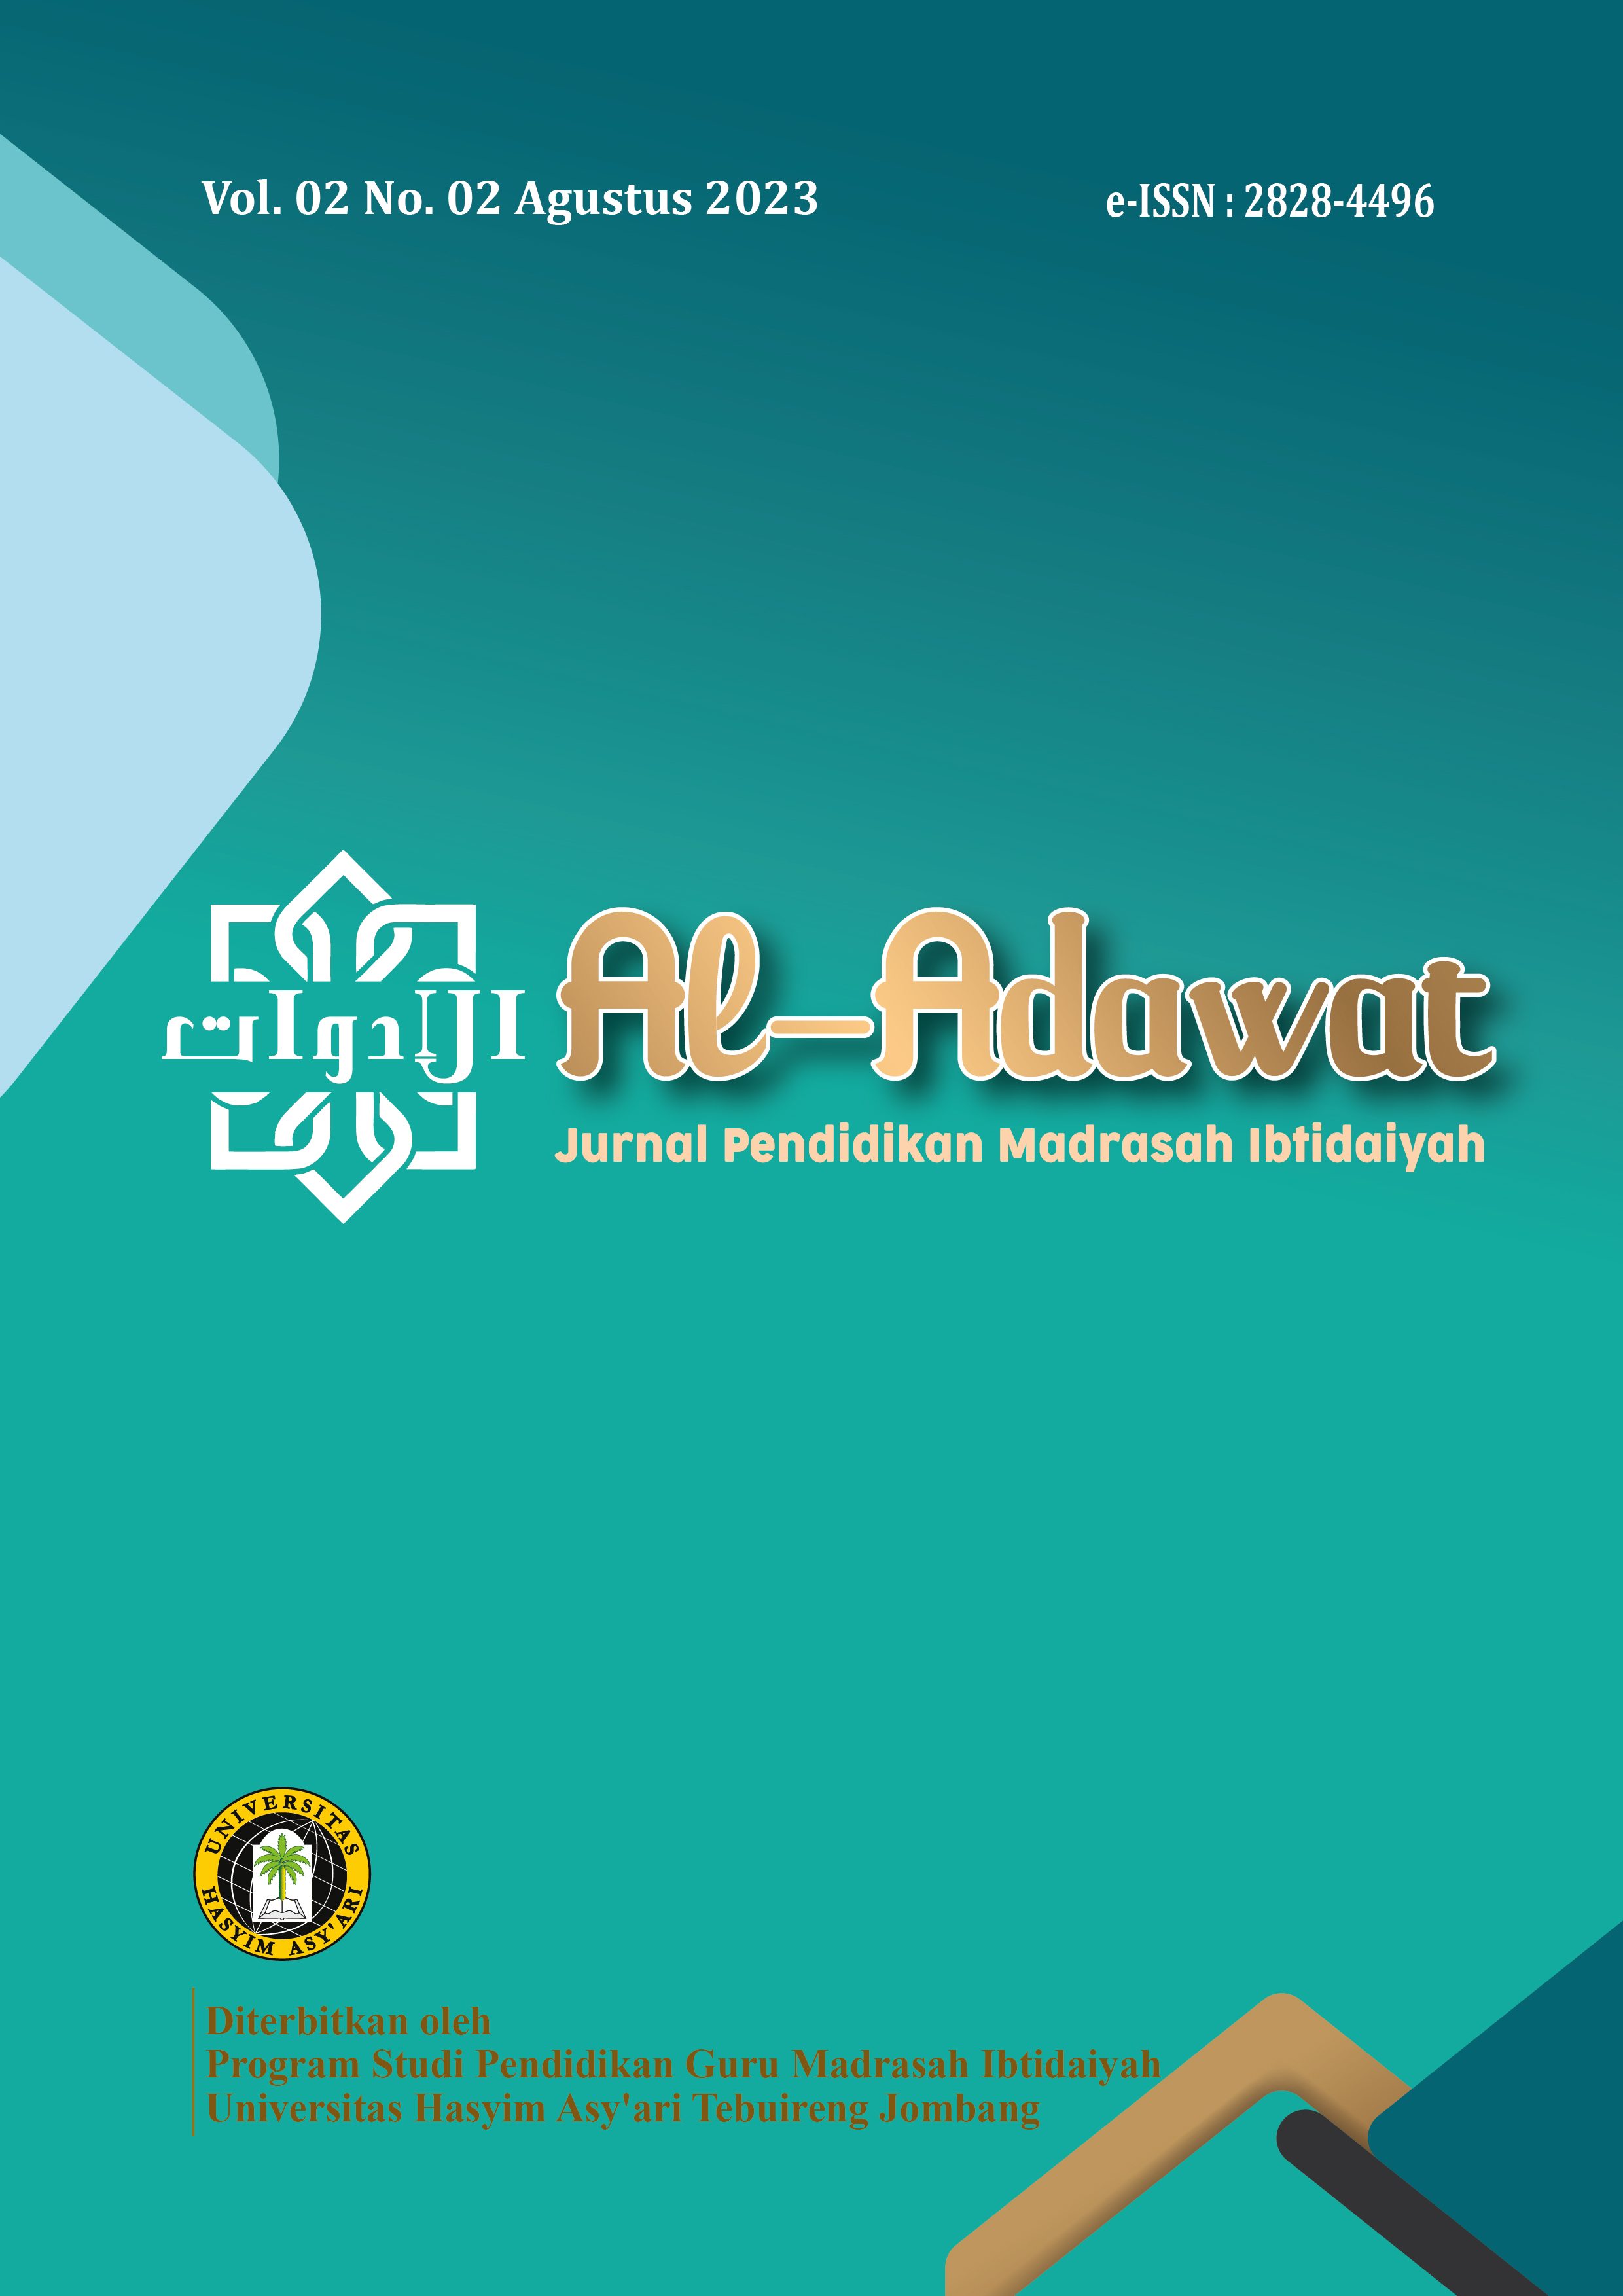 Jurnal Pendidikan Guru Madrasah Itidaiyah diterbitkan dua kali dalam satu tahun ( Bulan februari dan bulan Agustus) oleh Program Studi Pendidikan Guru Madrasah Ibtidaiyah Fakultas Agama Islam UNHASY Tebuireng Jombang.